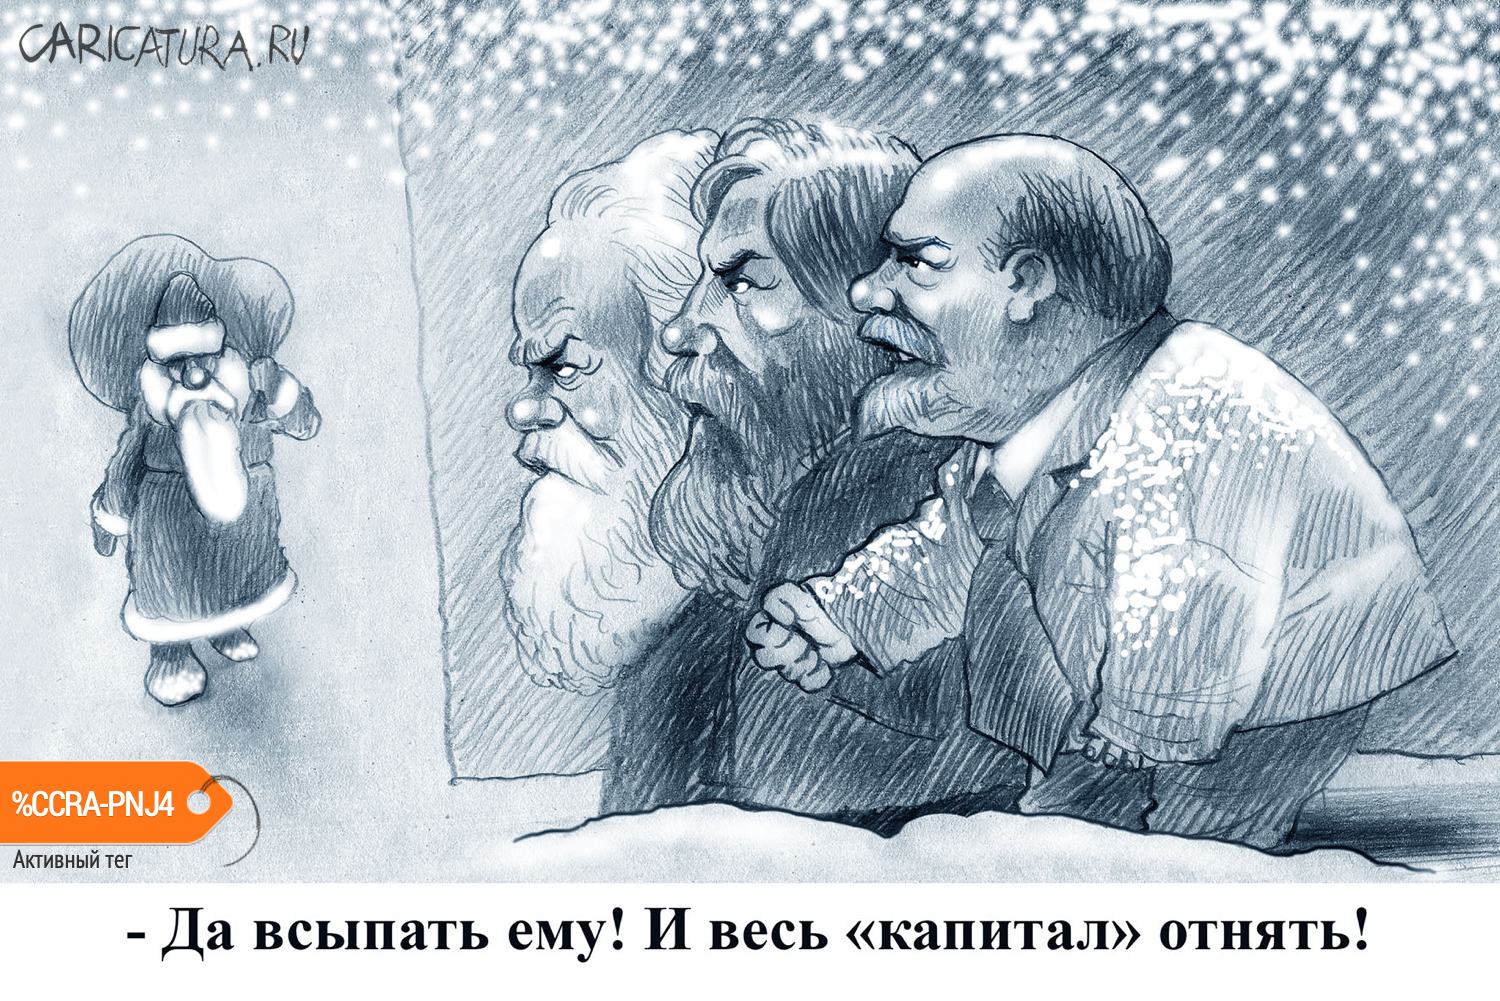 Карикатура "Баламуты", Александр Попов